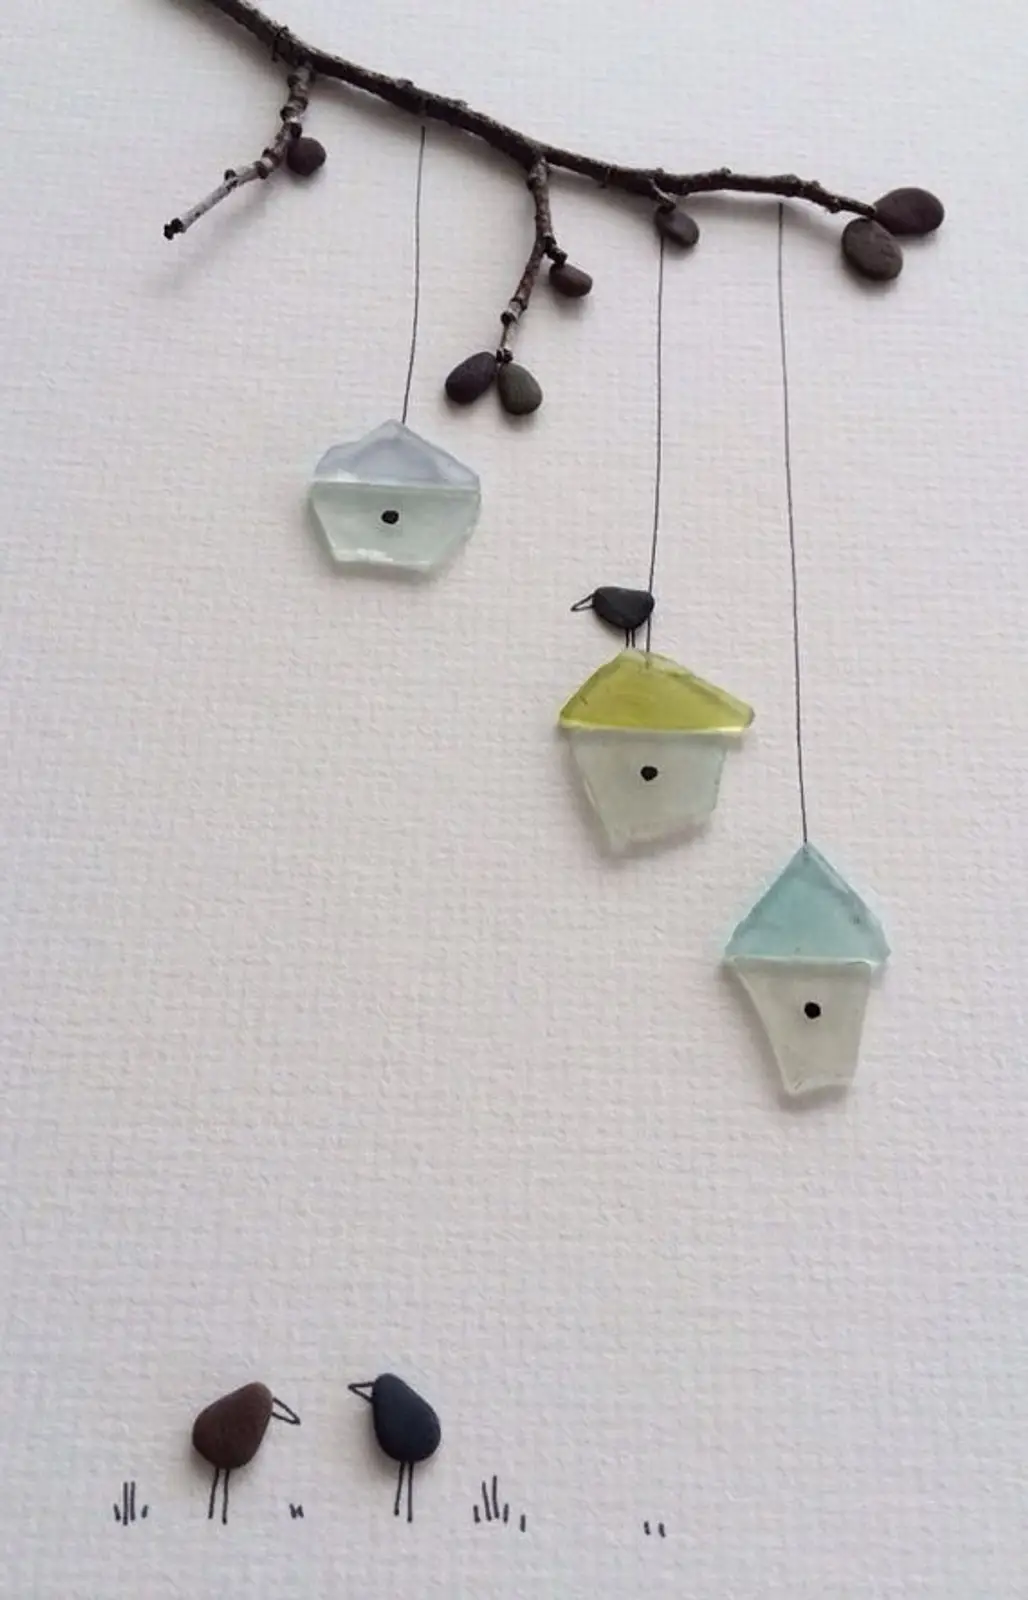 Hang Some Tiny Birdhouses